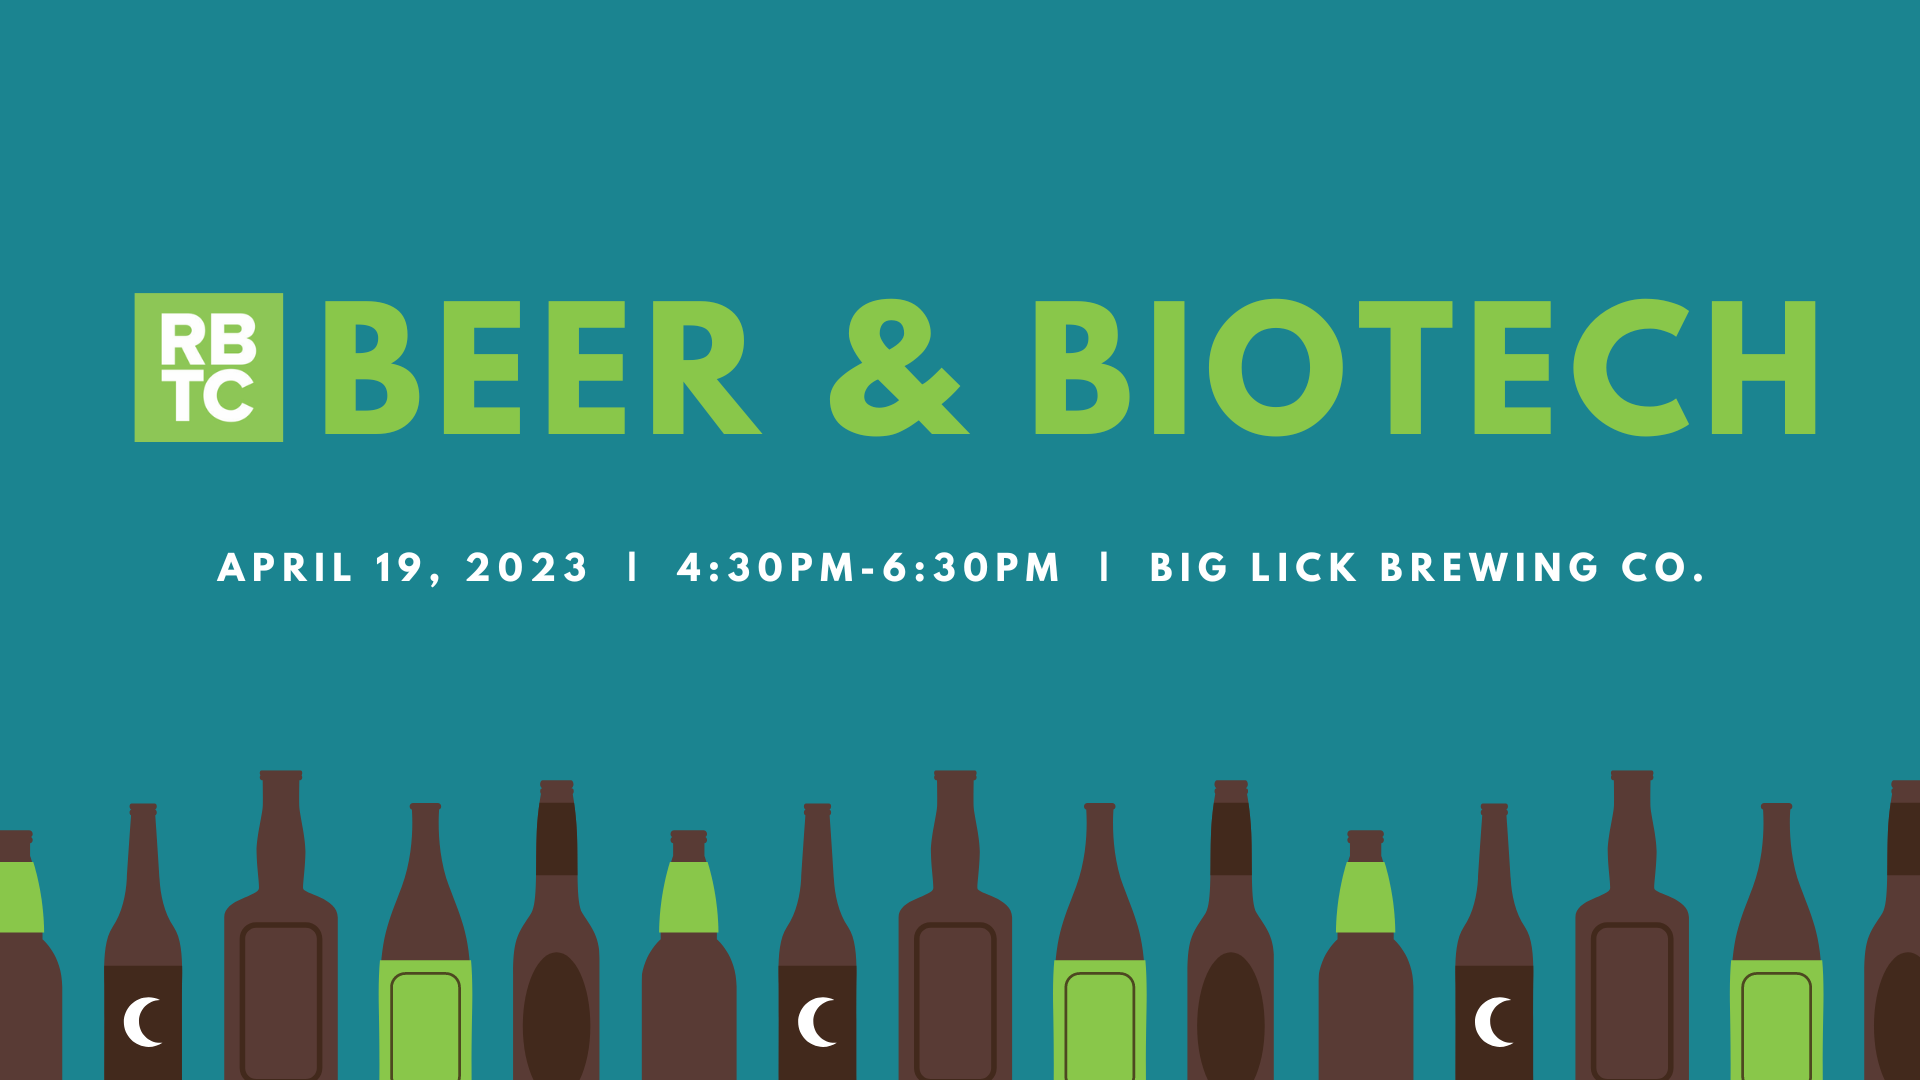 RBTC Beer & Biotech